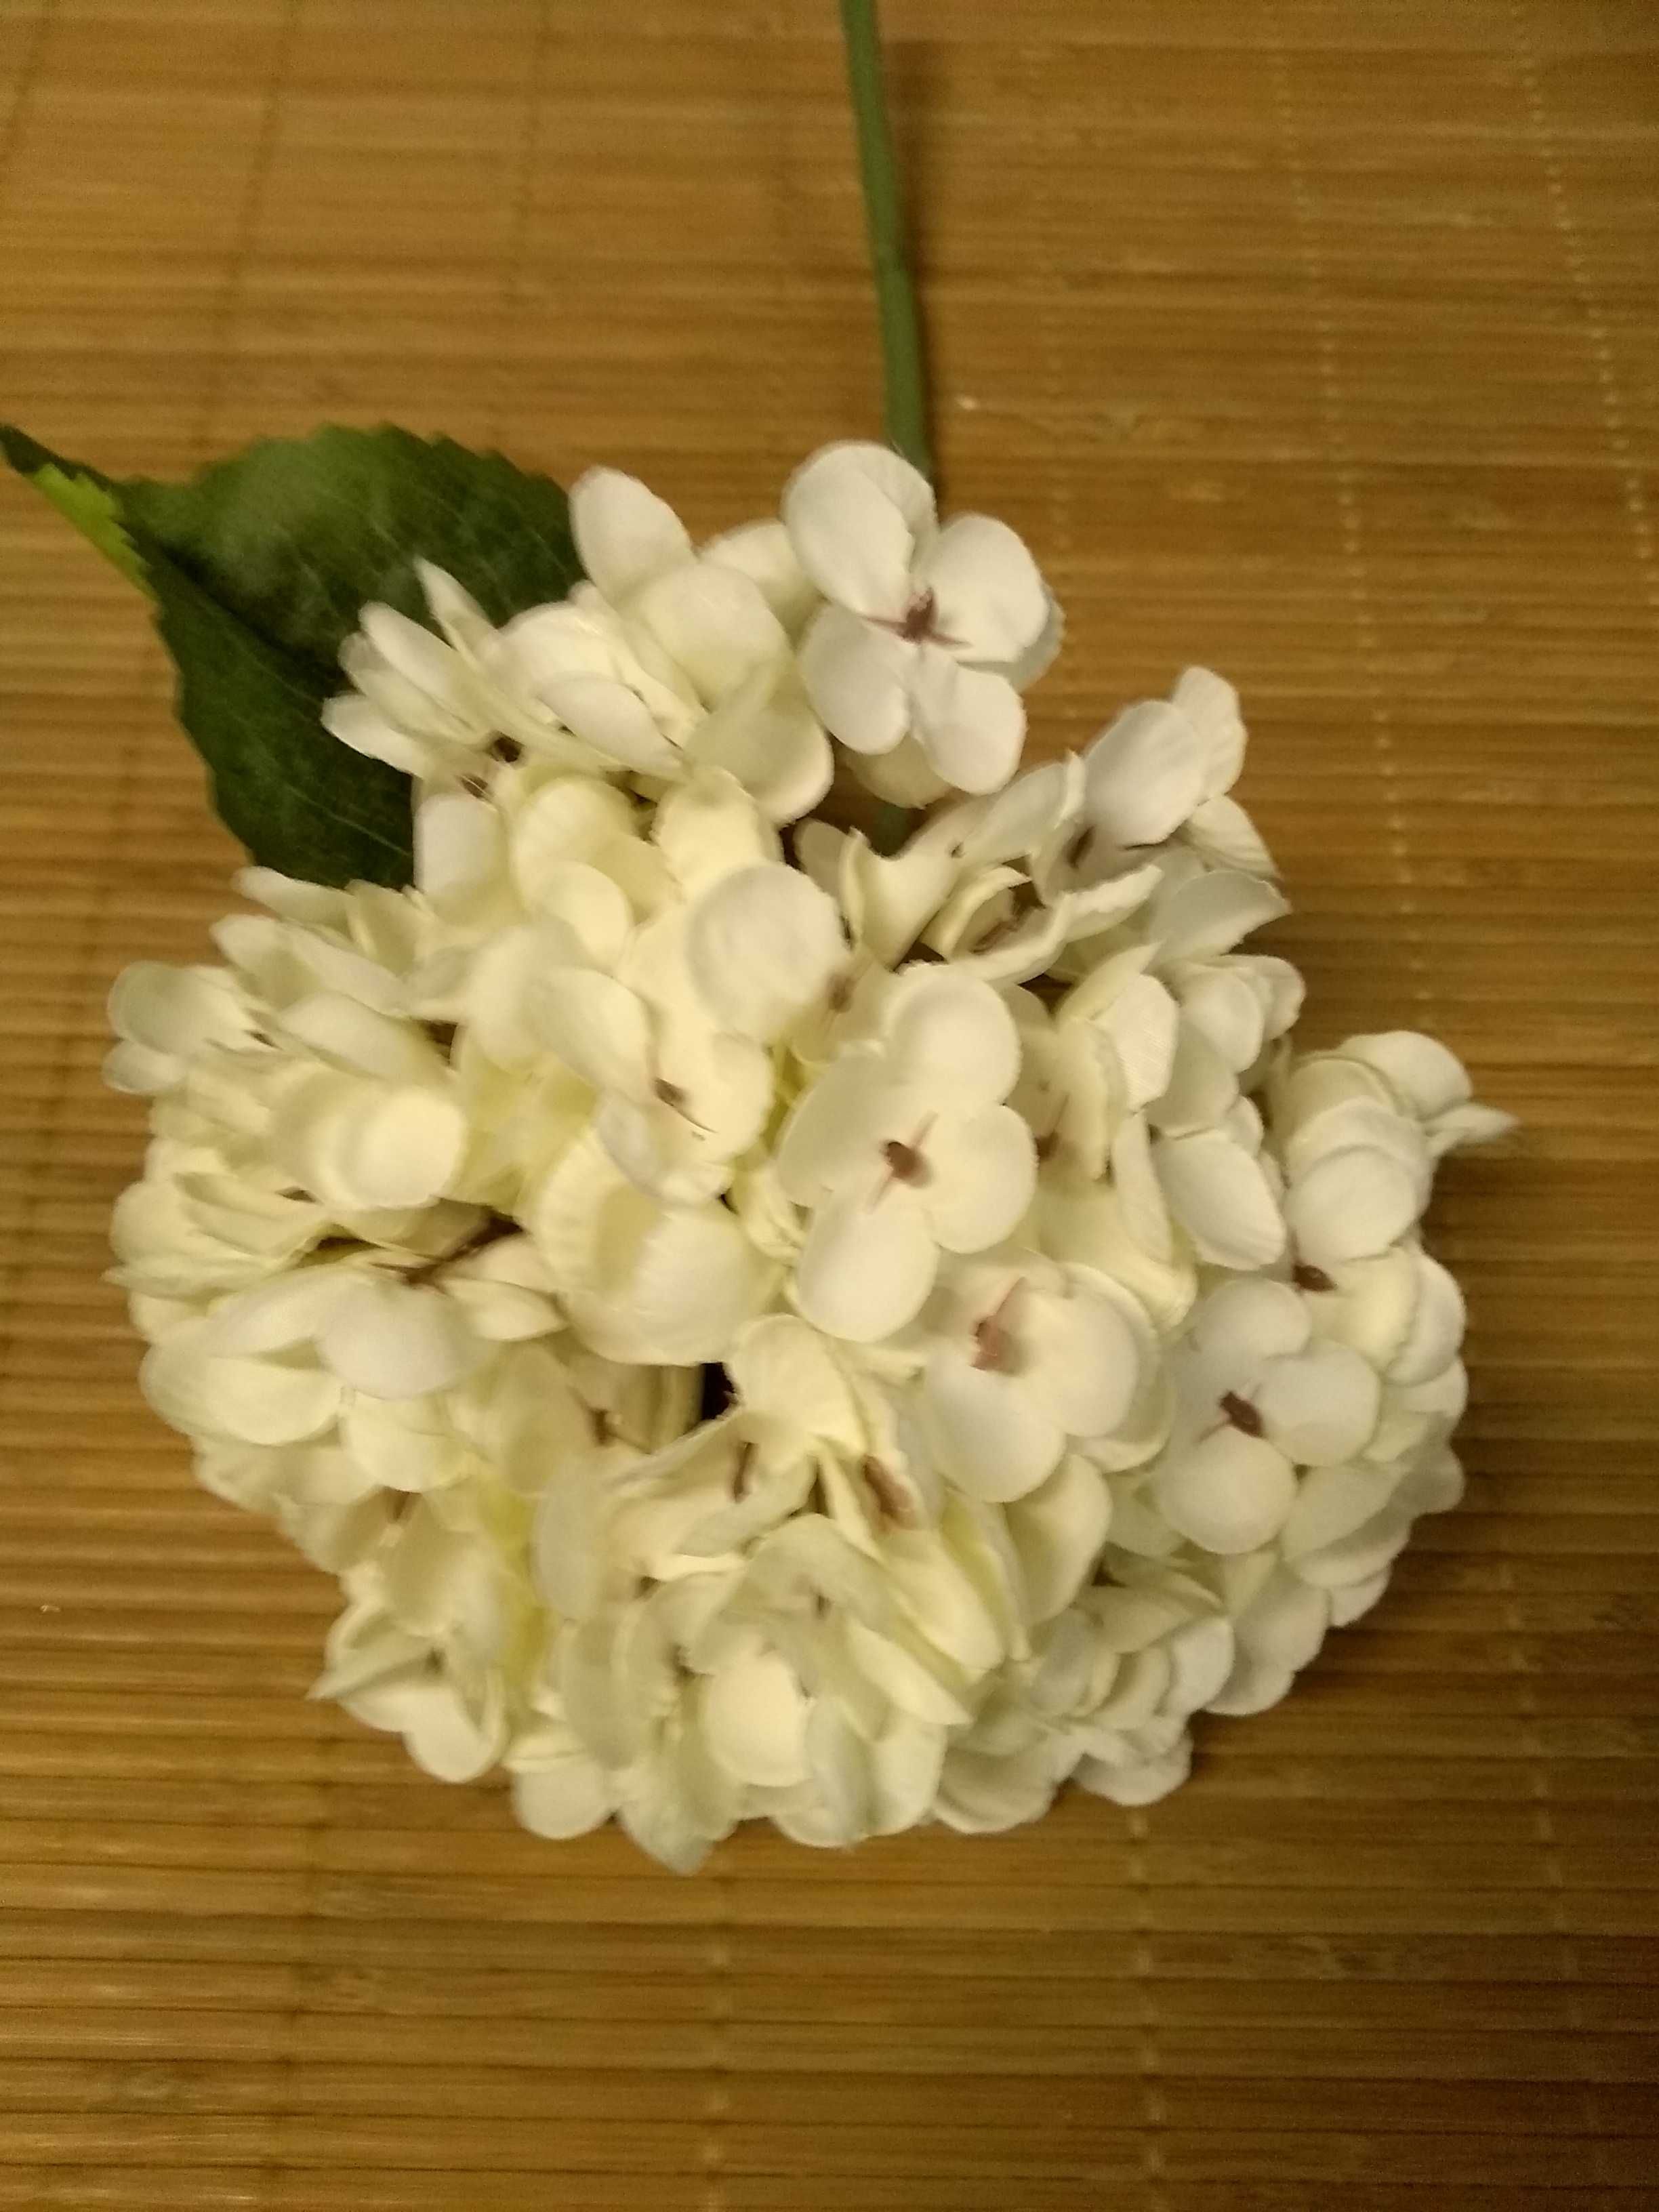 Hortensja gałązka krótka, sztuczne kwiaty